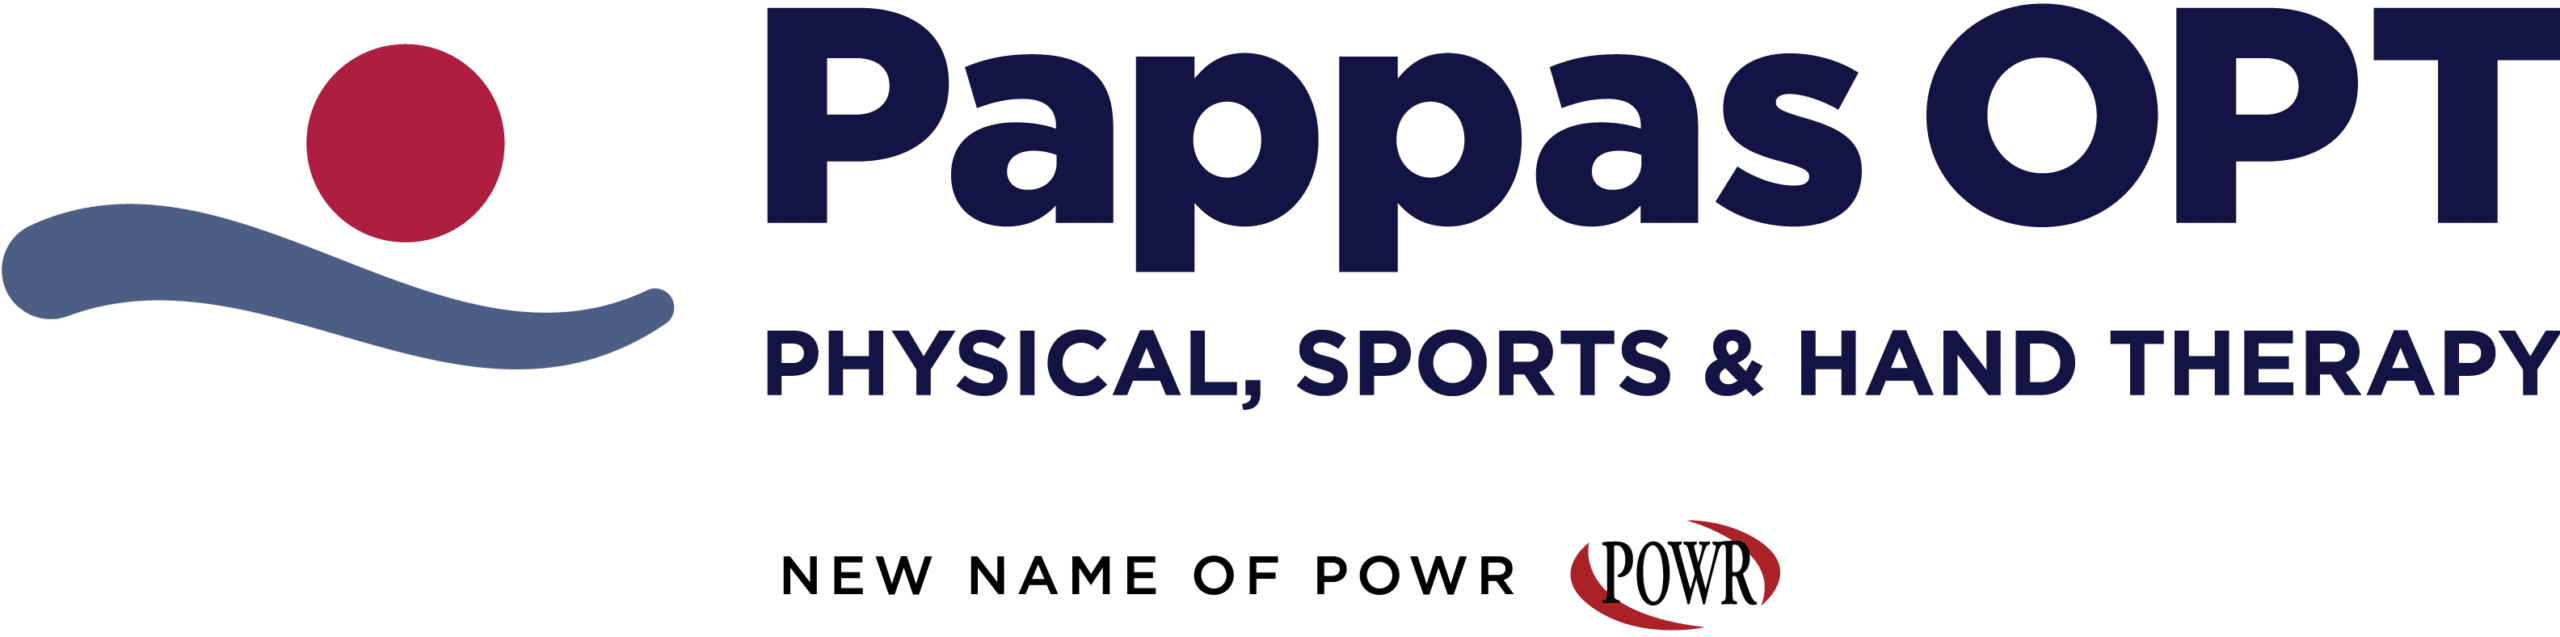 PappasOPT-Logo-Horizontal-NewNamePOWR-CMYK